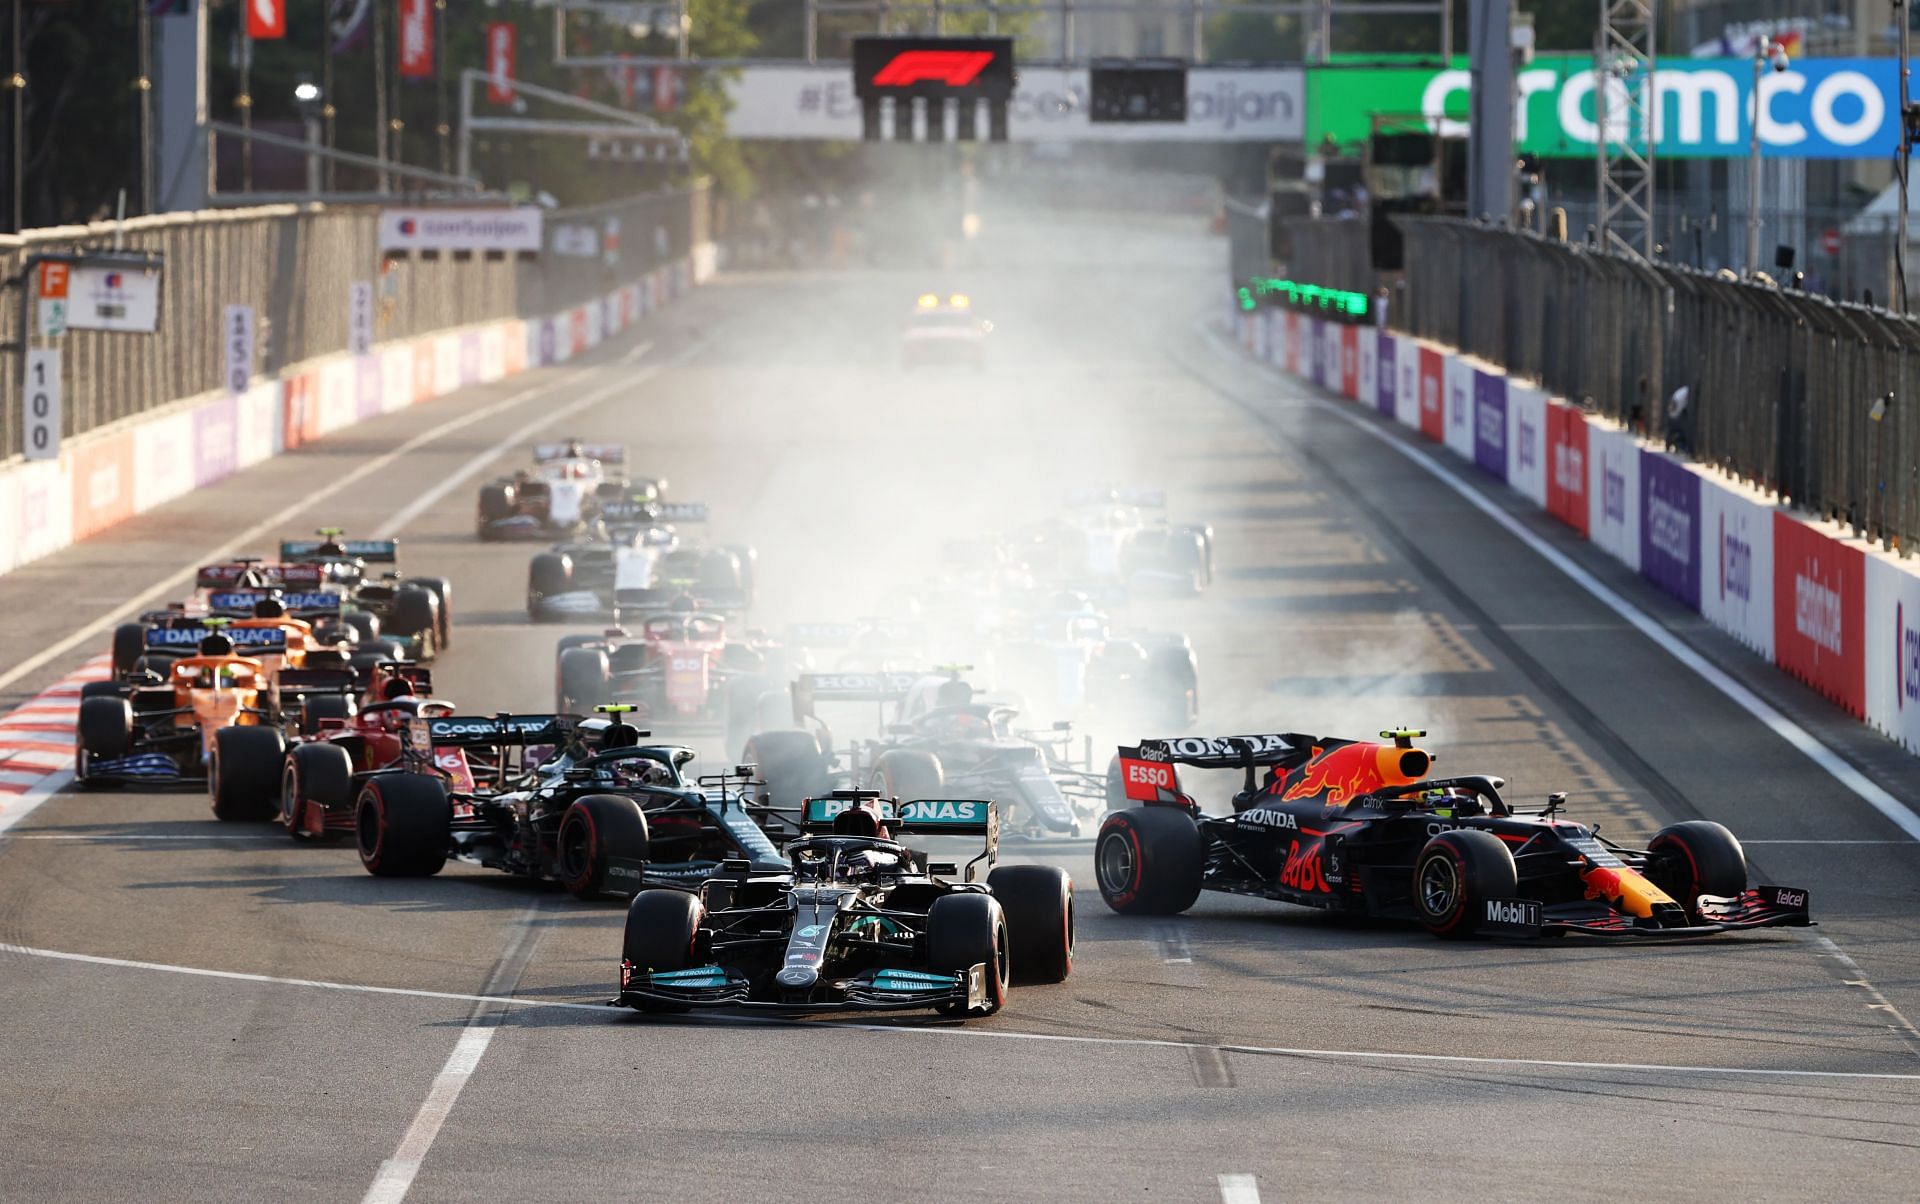 The last restart at the 2021 F1 Grand Prix of Azerbaijan